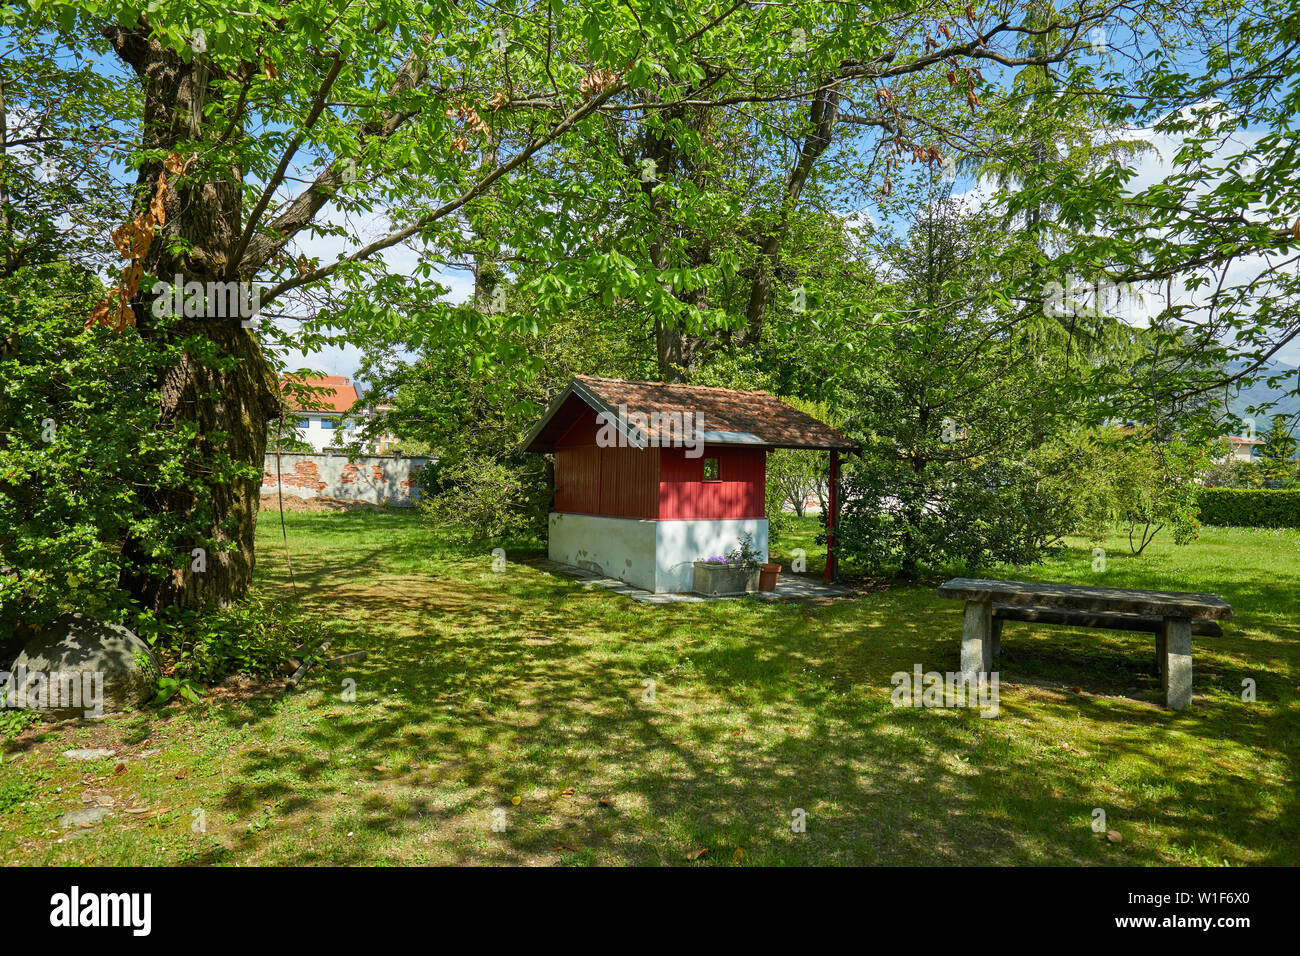 Jardín, pequeña casa roja y mesa de piedra en un día soleado de verano, Italia Foto de stock